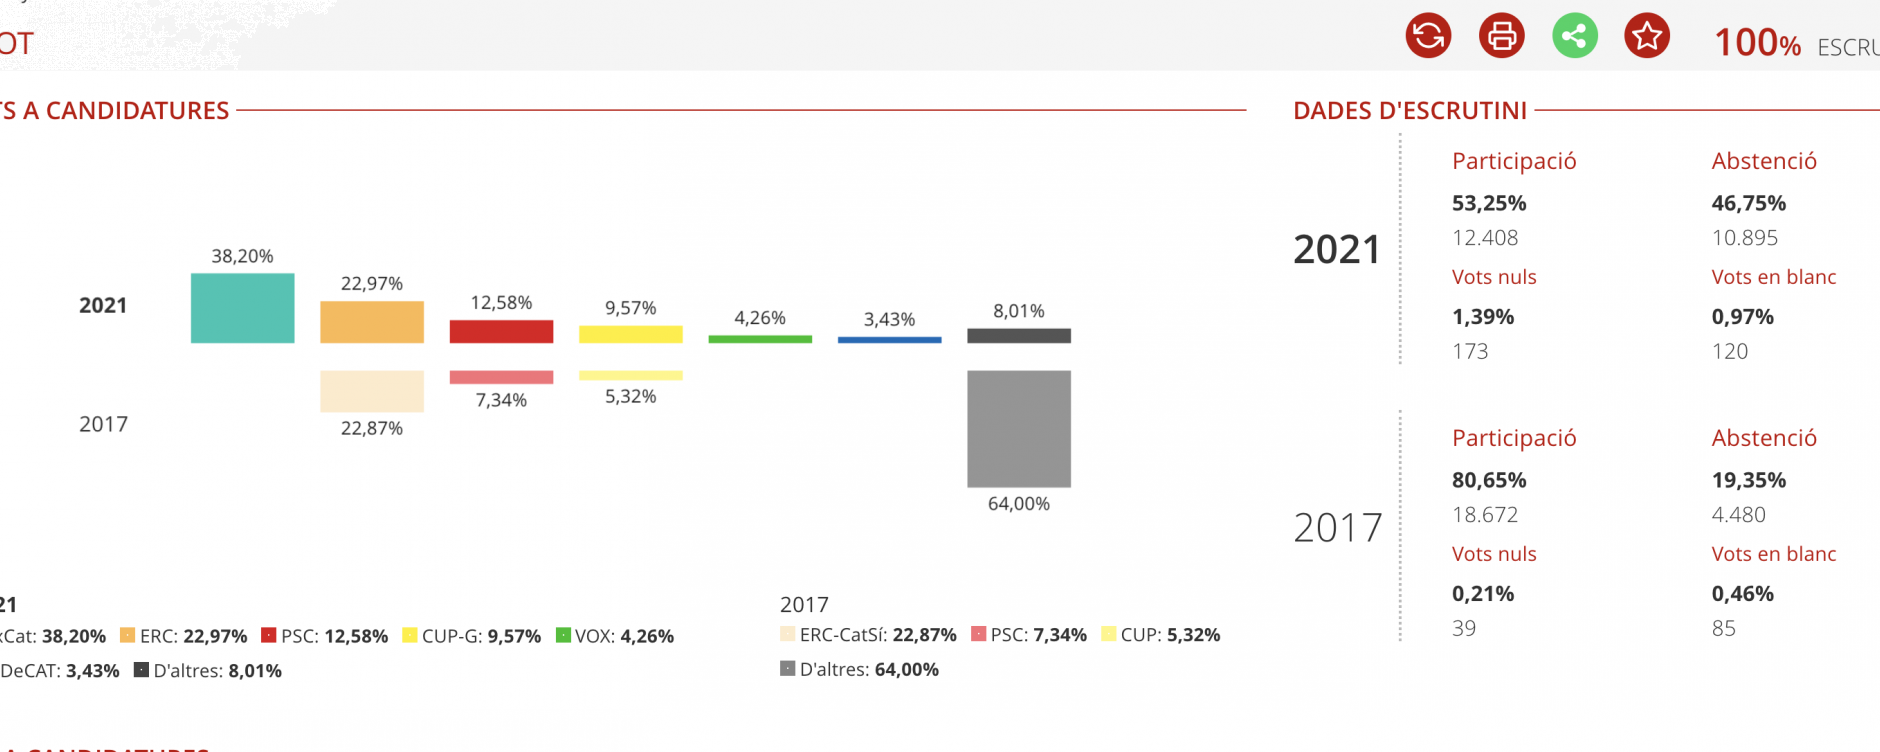 Resultats Eleccions 2021